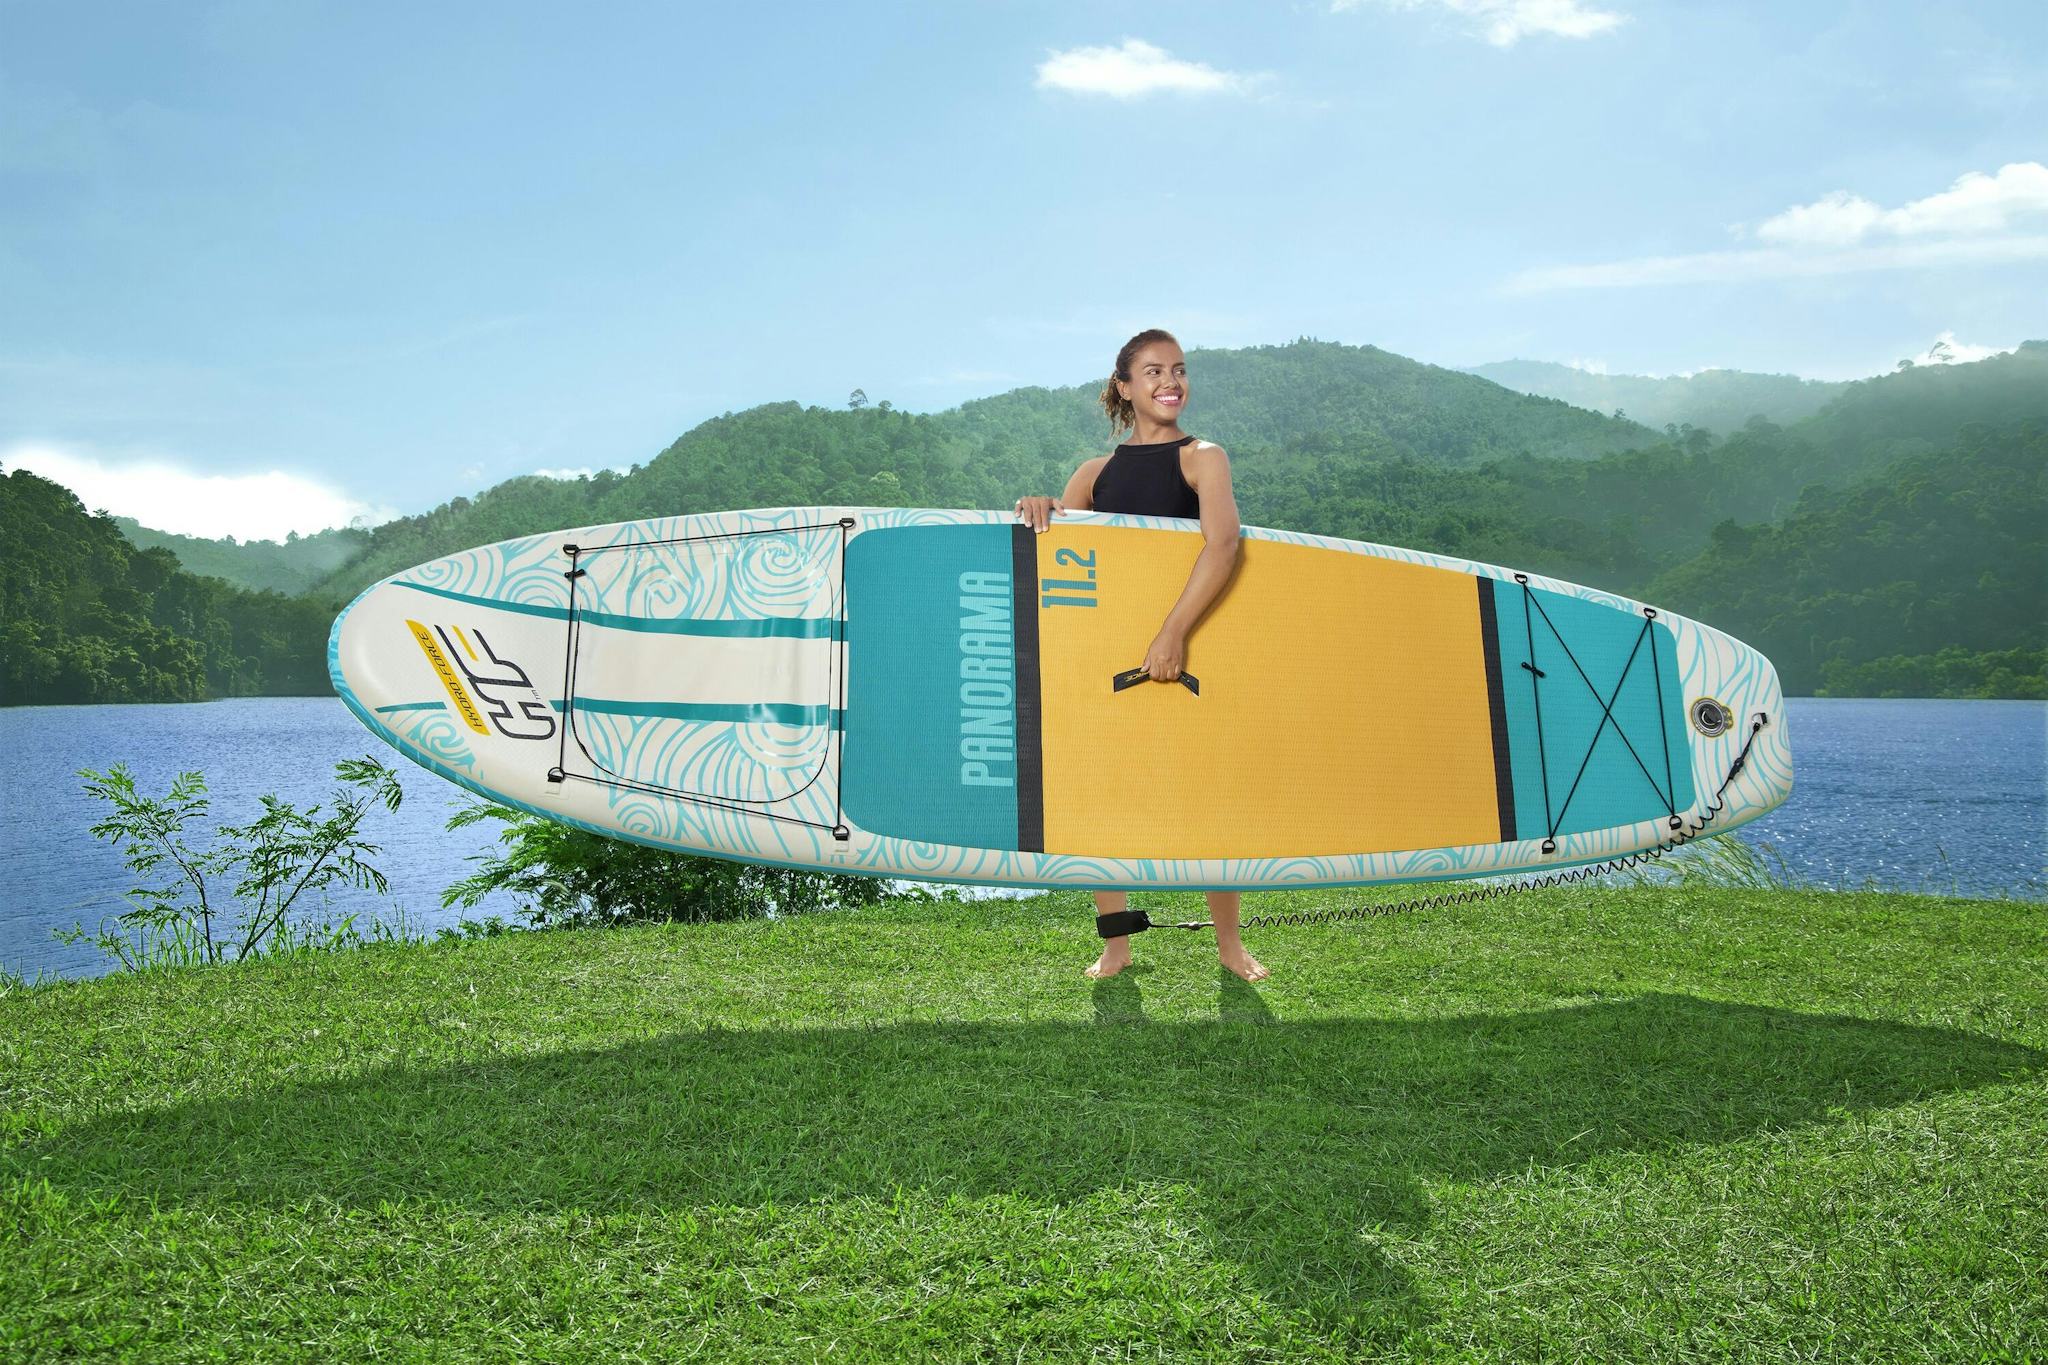 Sports d'eau Paddle gonflable Panorama Hydro-force™, 340 x 89 x 15 cm, 150 kg max, fenêtre transparente, poignées de transport, pompe, leash, sac de transport et pagaie Bestway 9